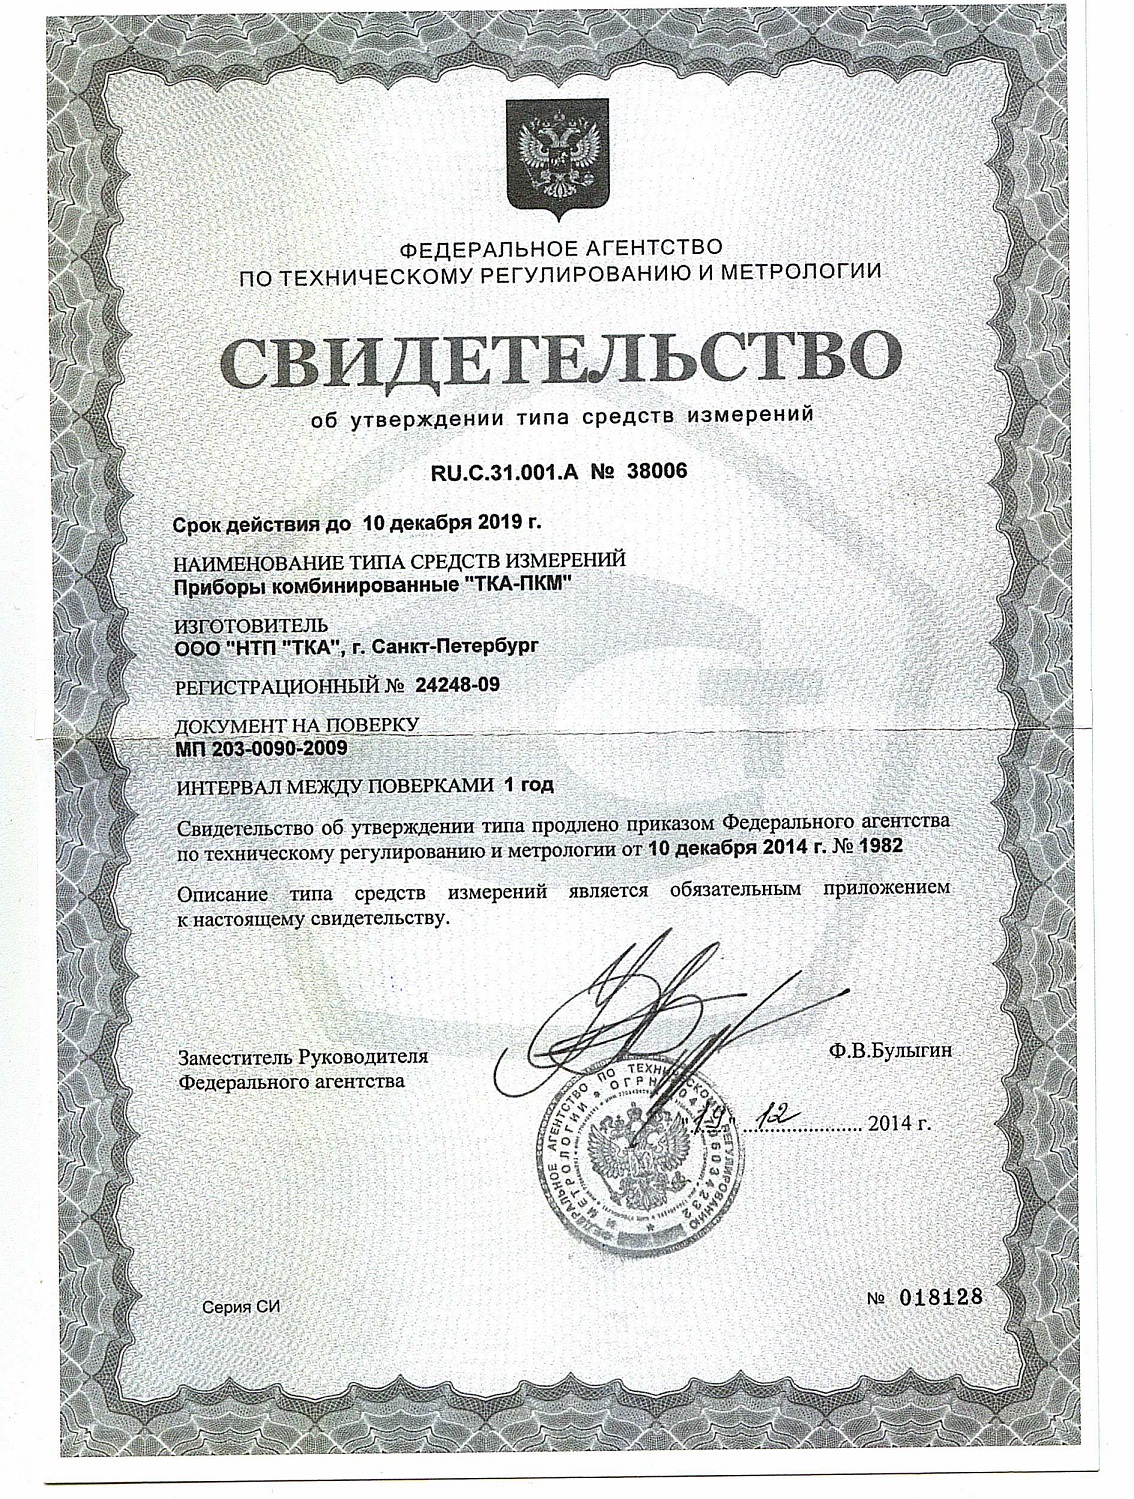 Сертификат поверка годовая анемометра ТКА на точность